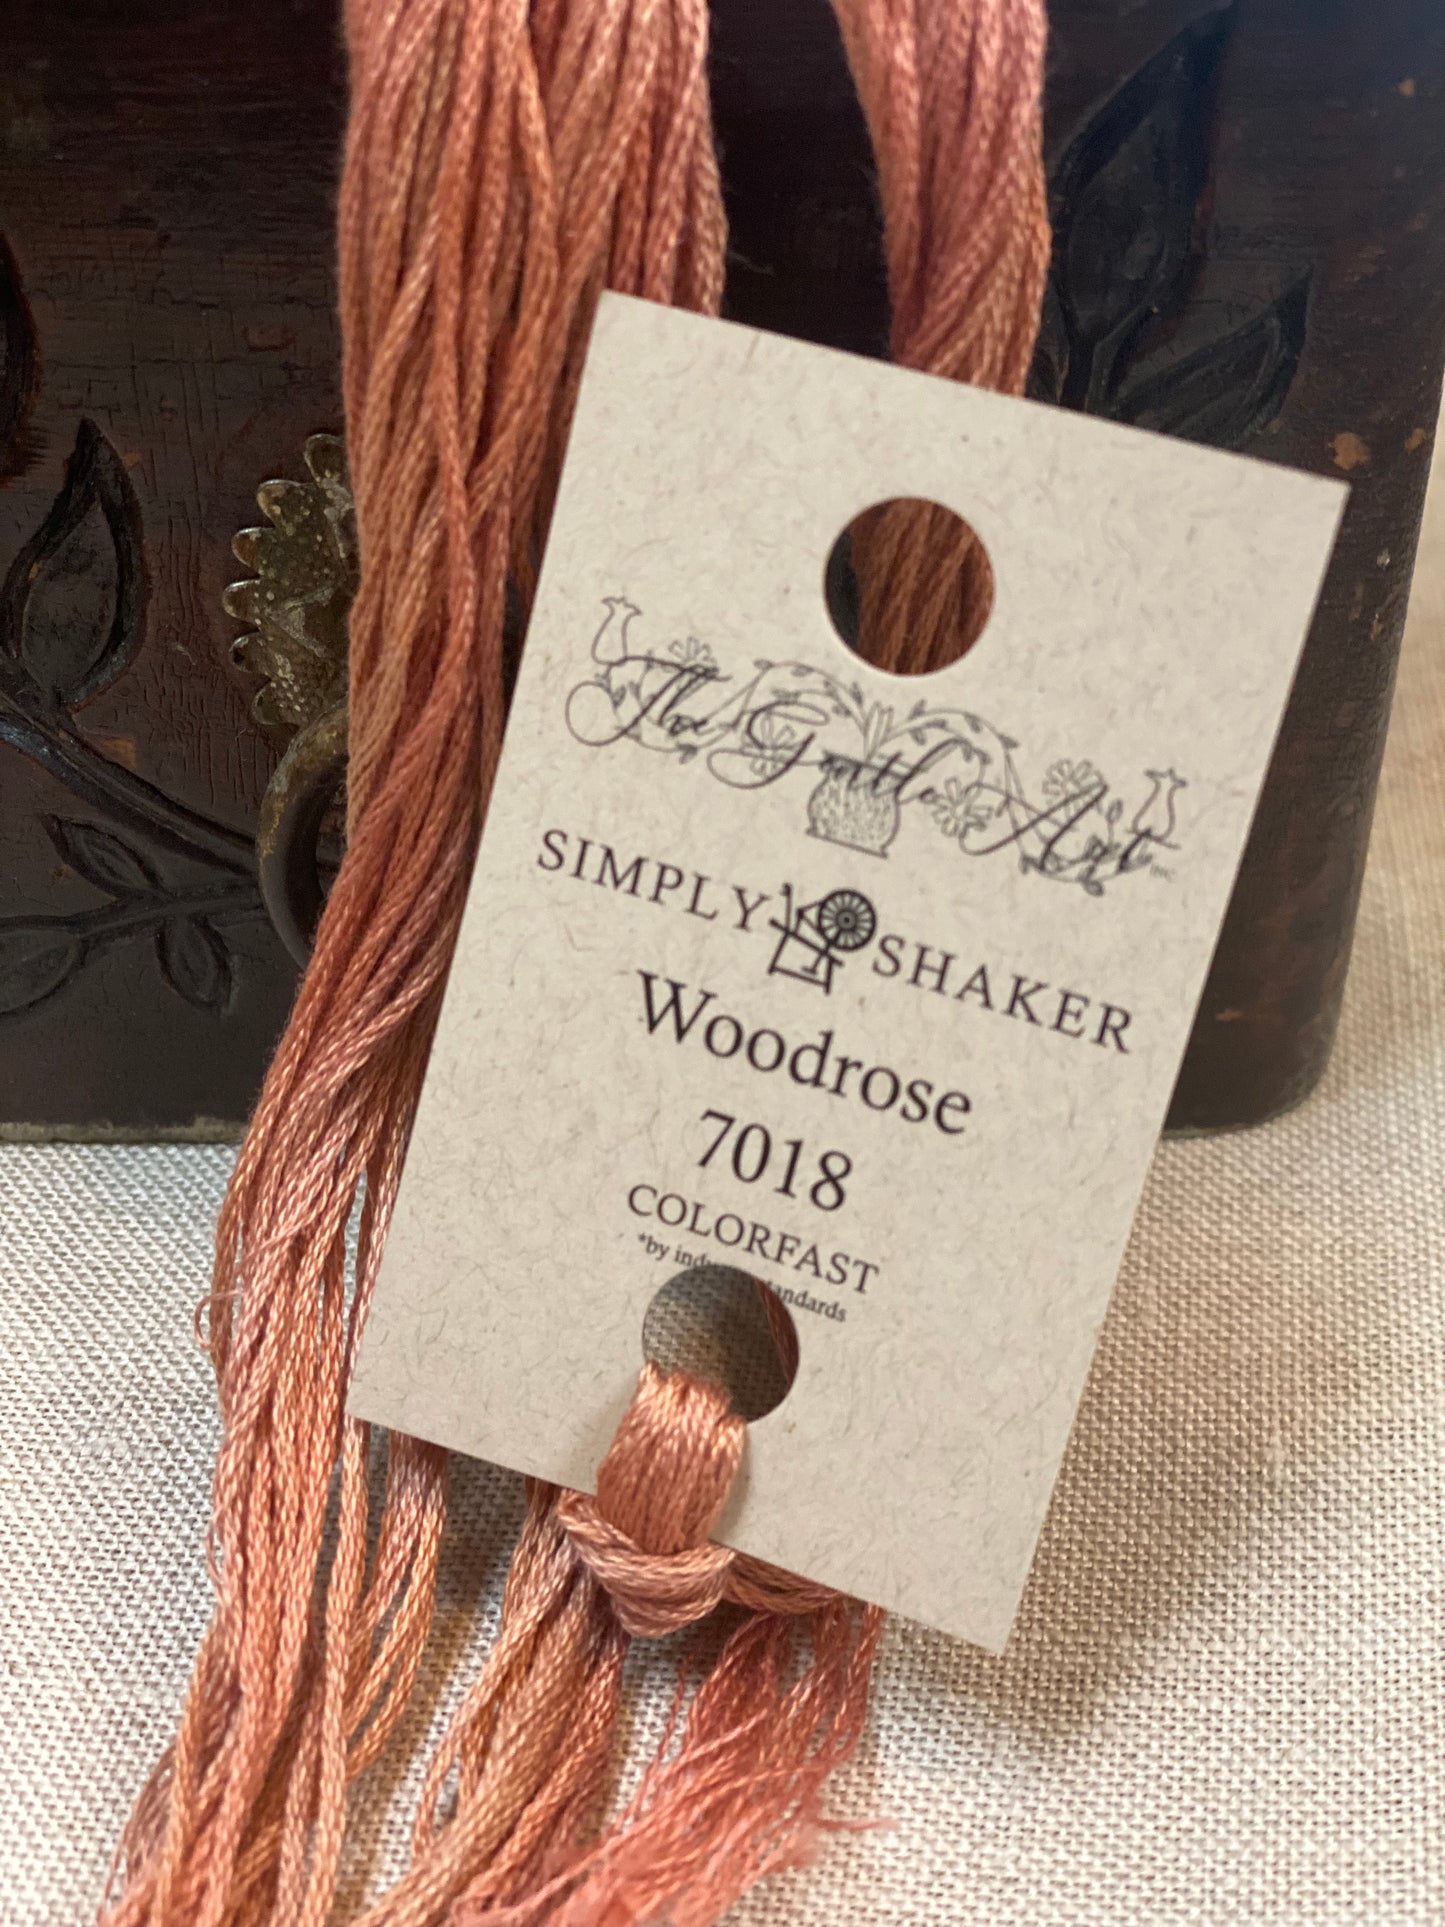 Woodrose, 7018, Sampler Threads